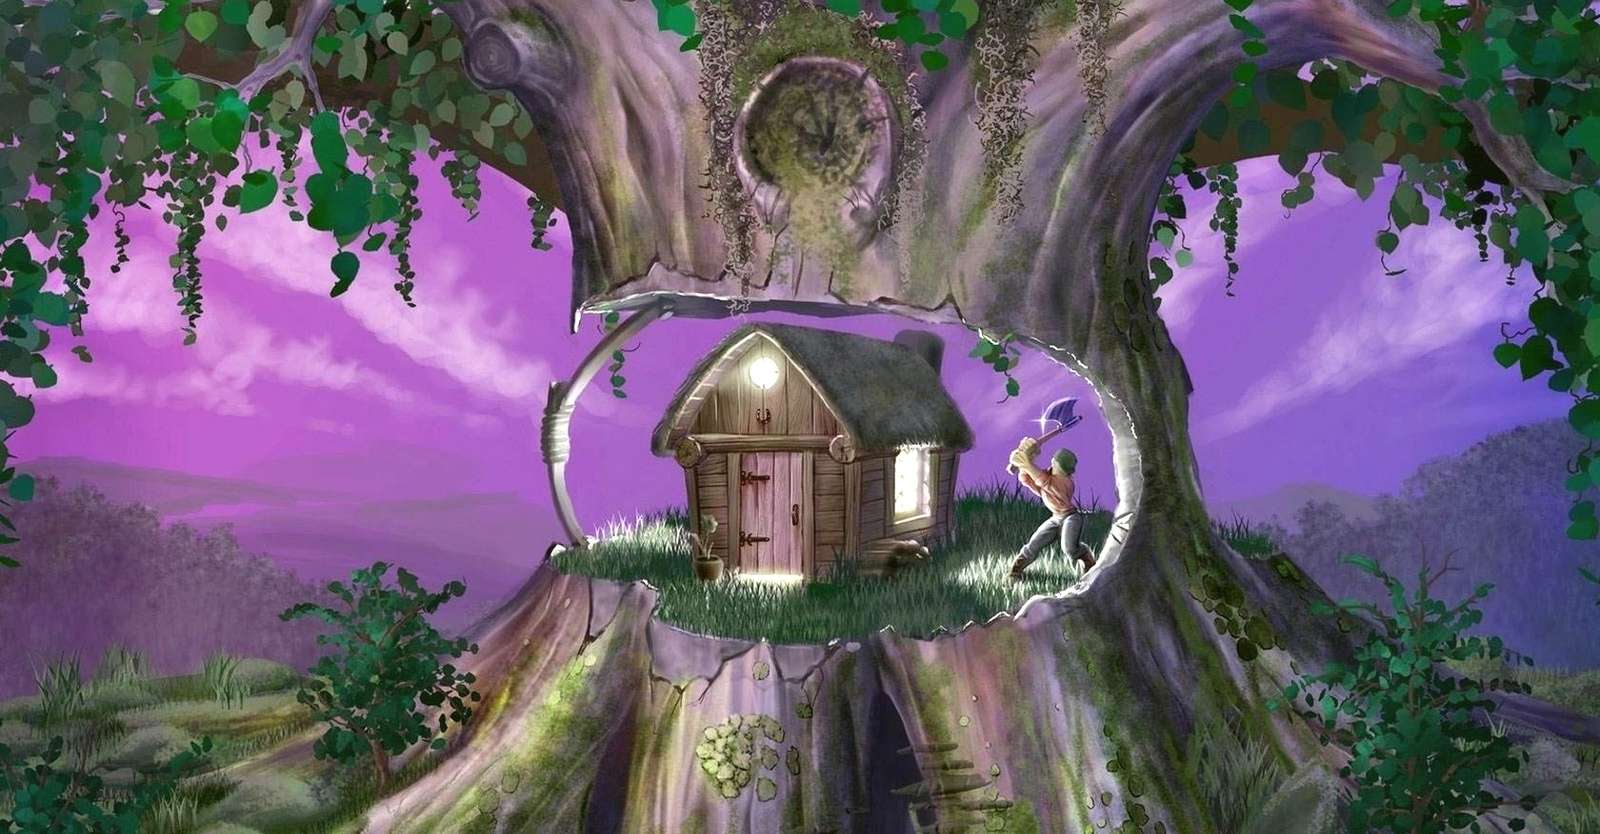 Fairytale cottage online puzzle